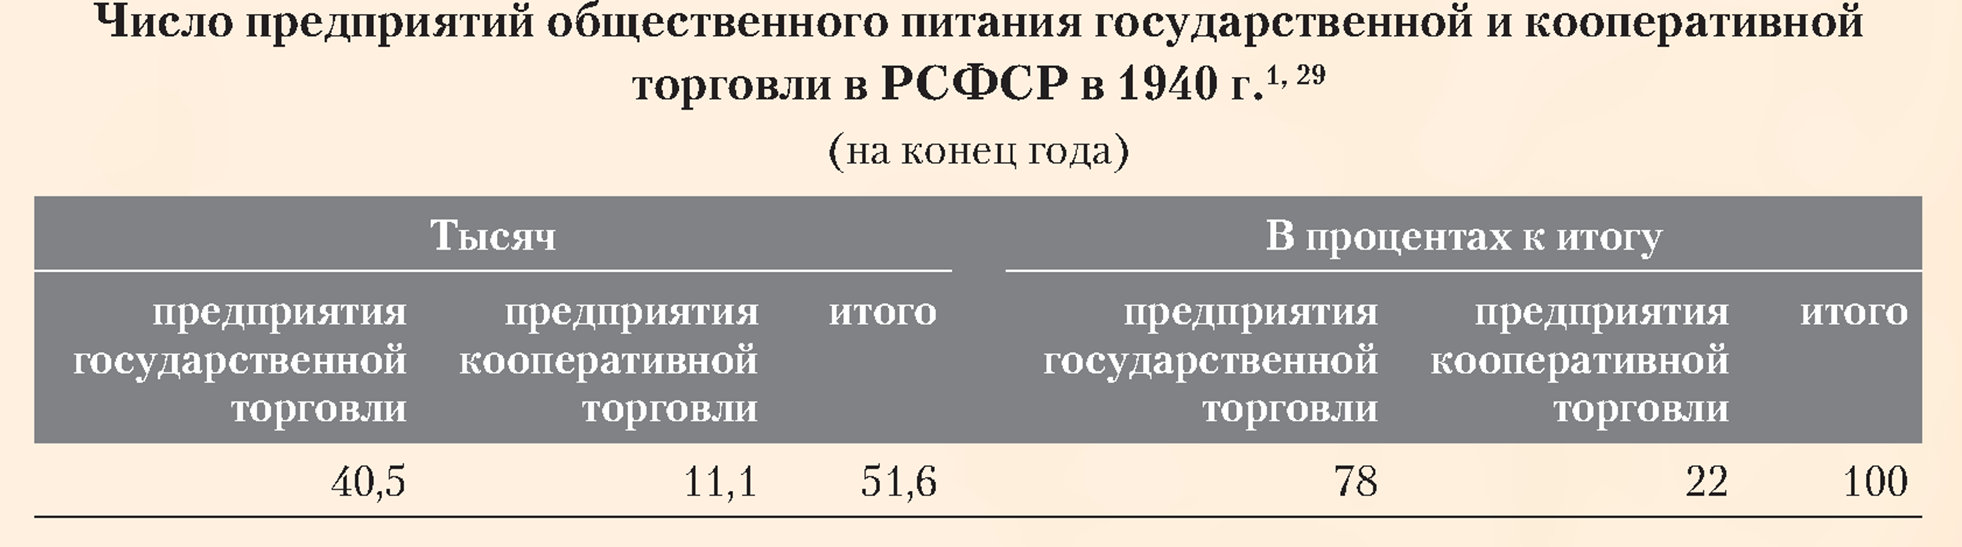 Число предприятий общественного питания государственной и кооперативной торговли в РСФСР в 1940 году